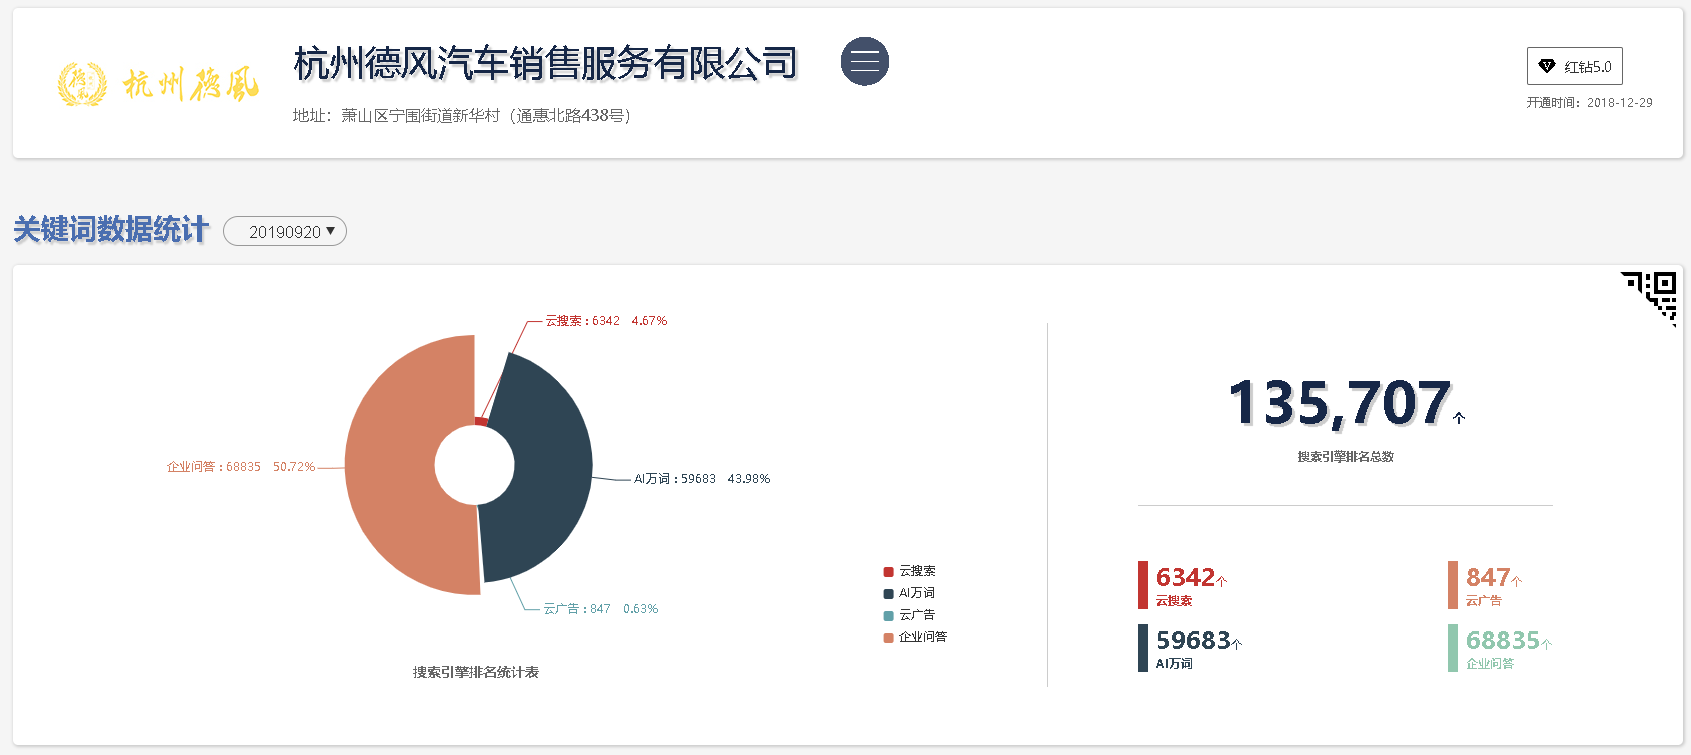 杭州德风汽车销售服务有限公司(图6)